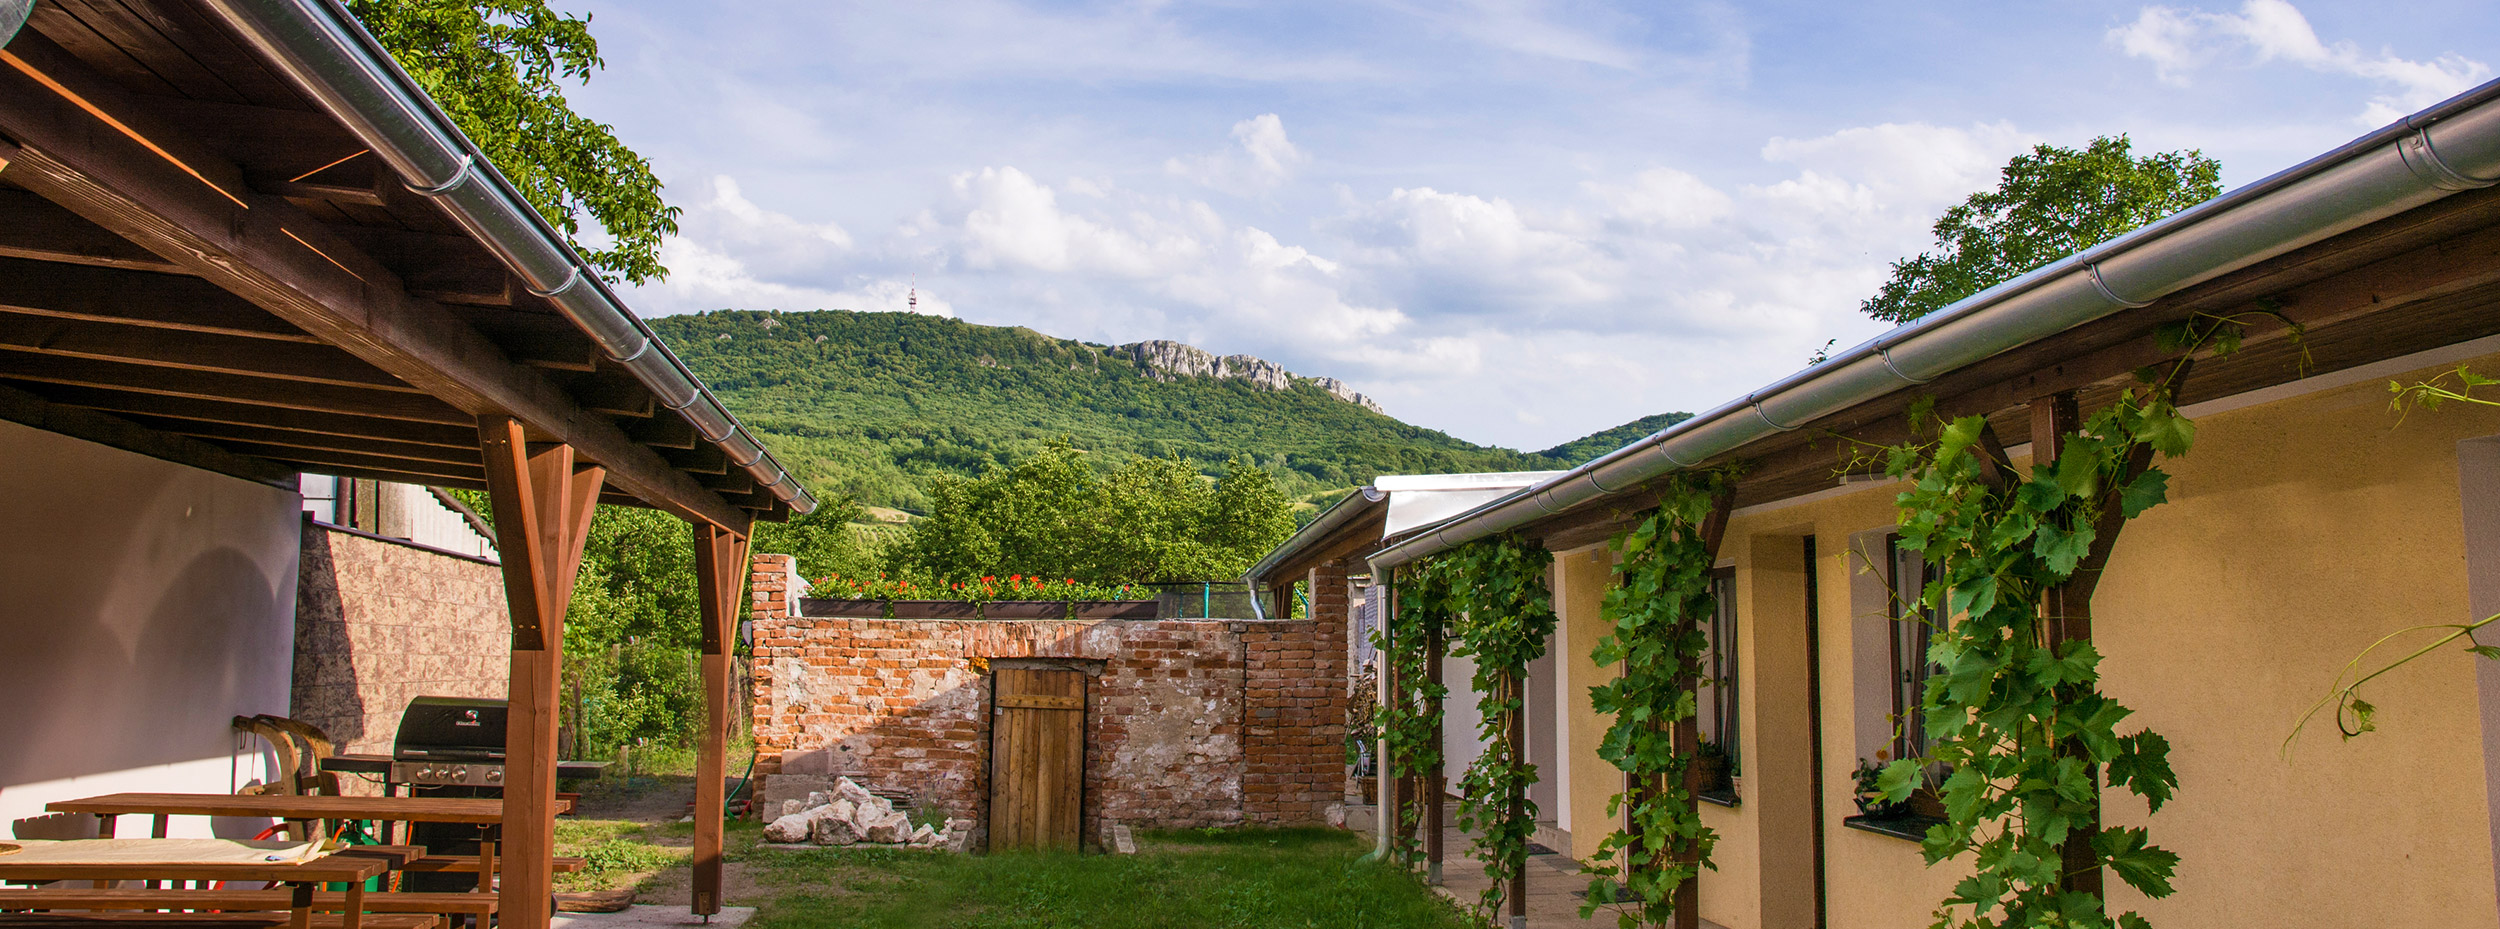 Ubytování v malé vinařské vesničce Dolní Věstonice